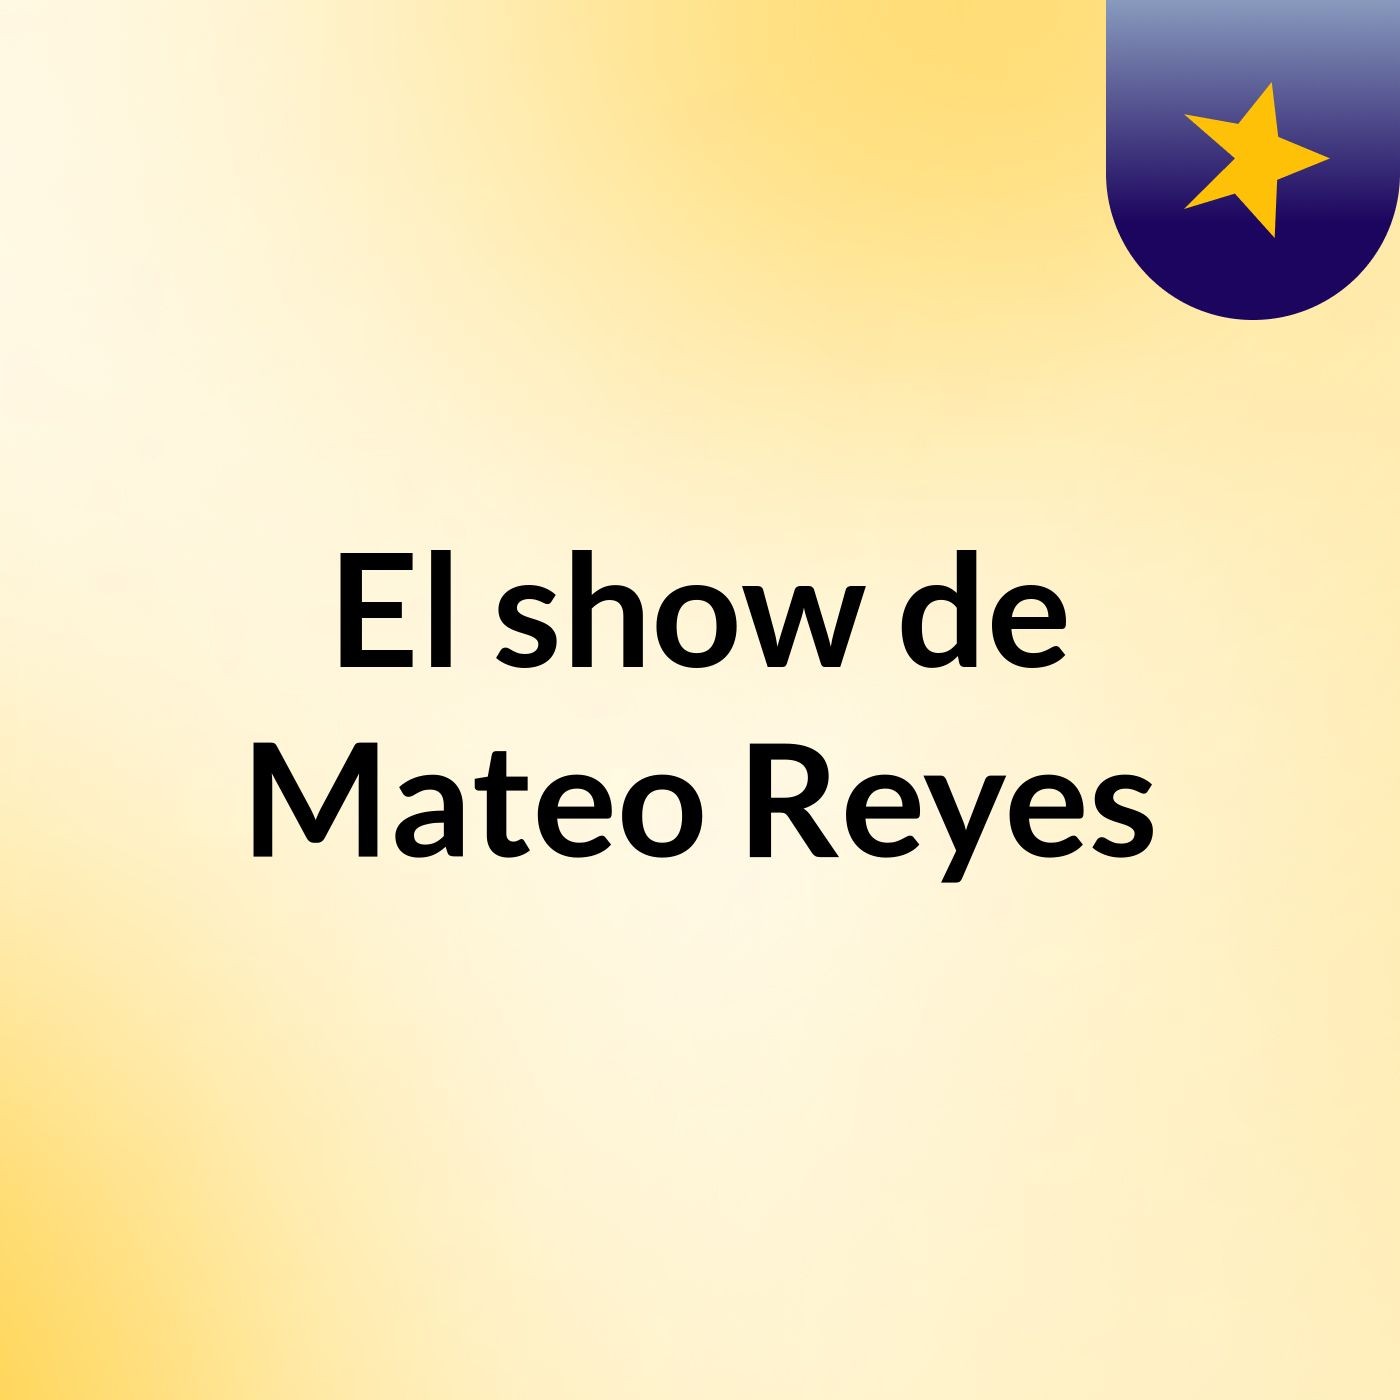 El show de Mateo Reyes